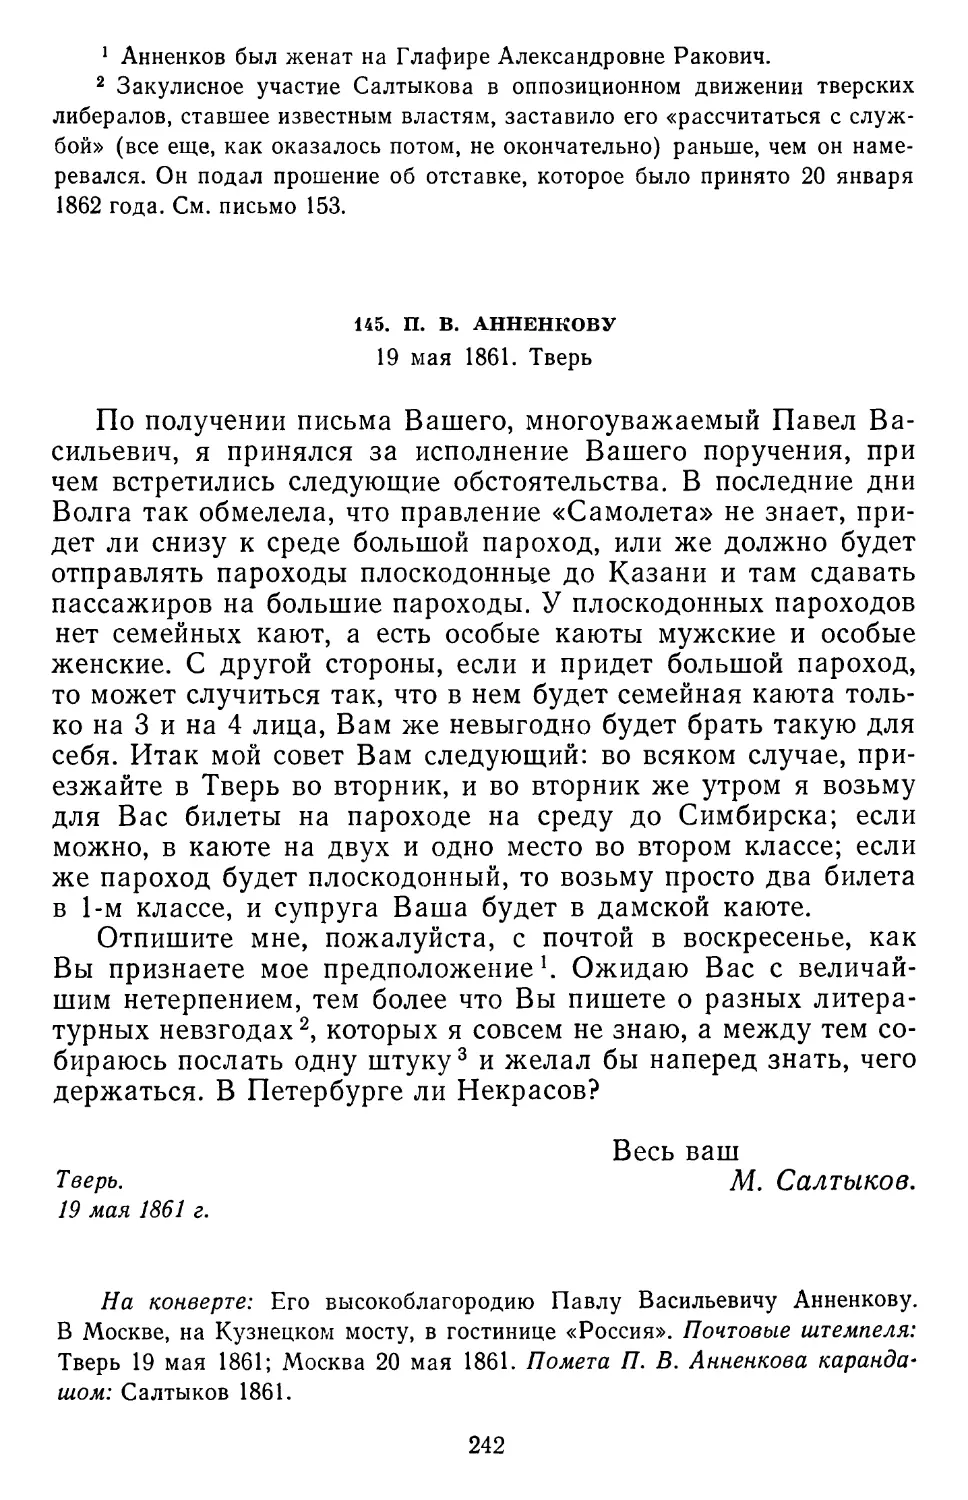 145.П.В.Анненкову.19 мая1861.Тверь